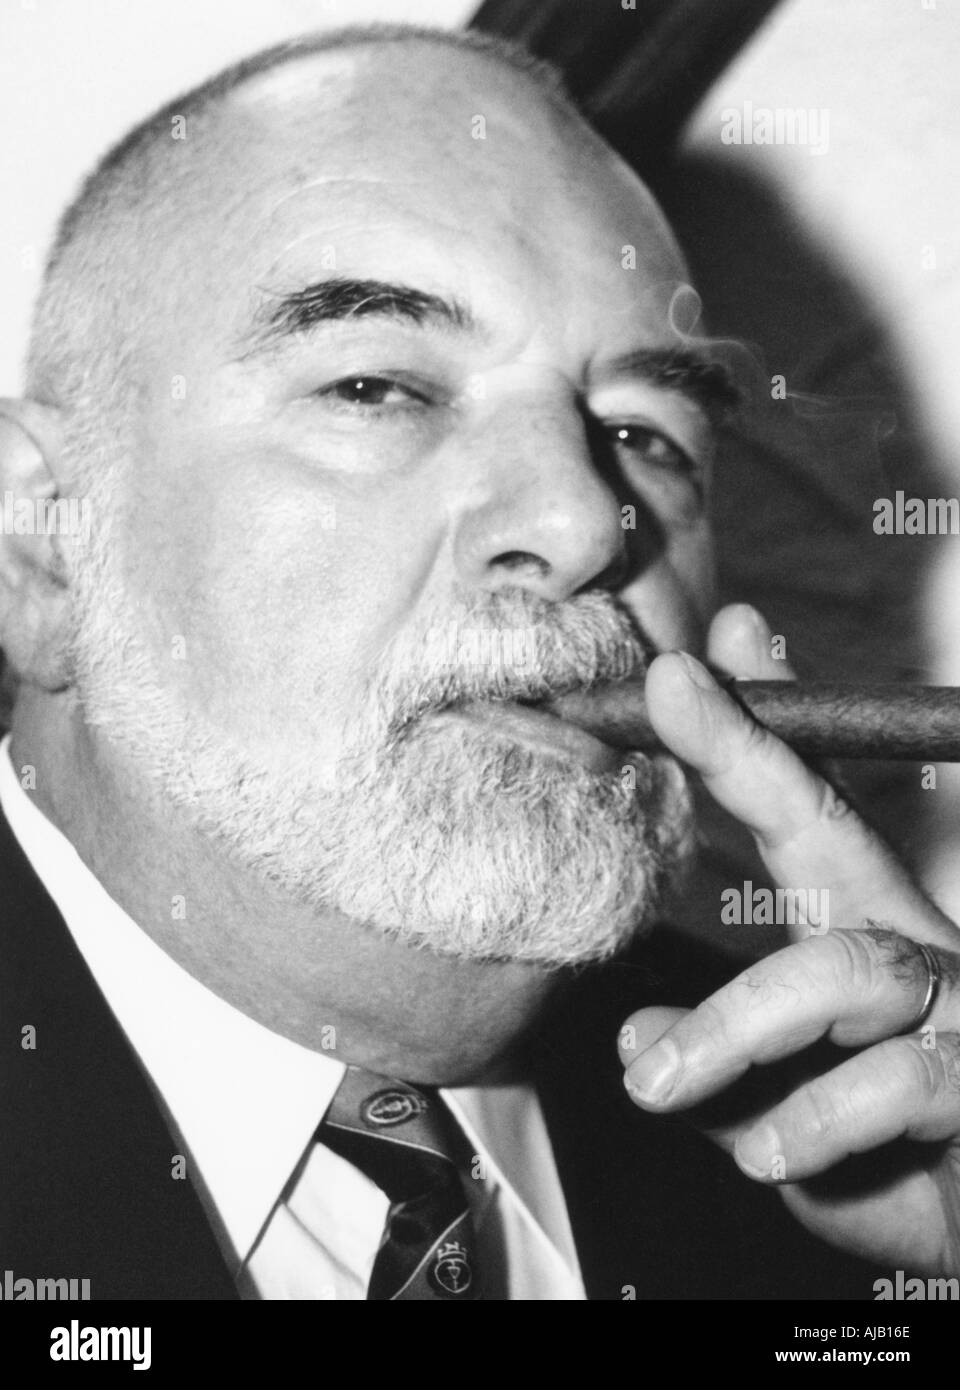 older man in suit smoking cigar Stock Photo